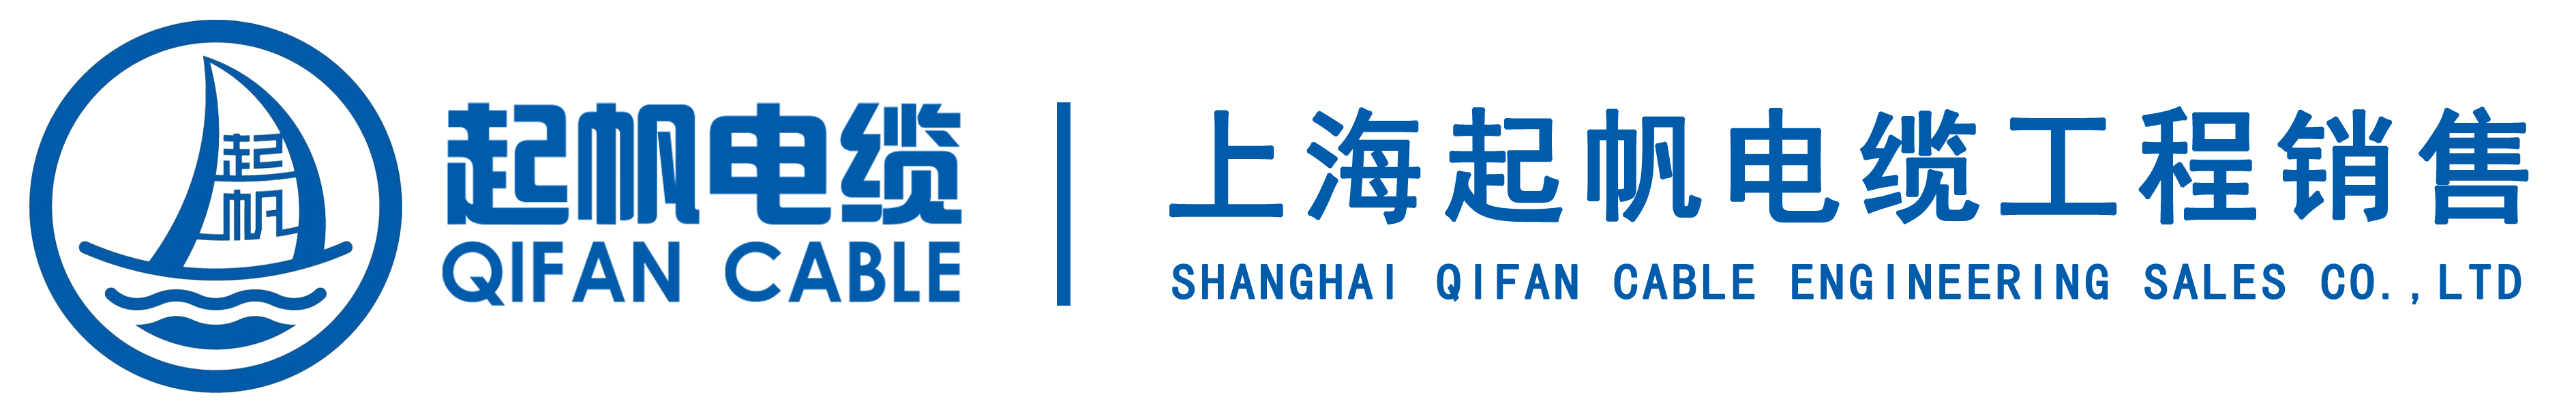 上海起帆电缆工程销售